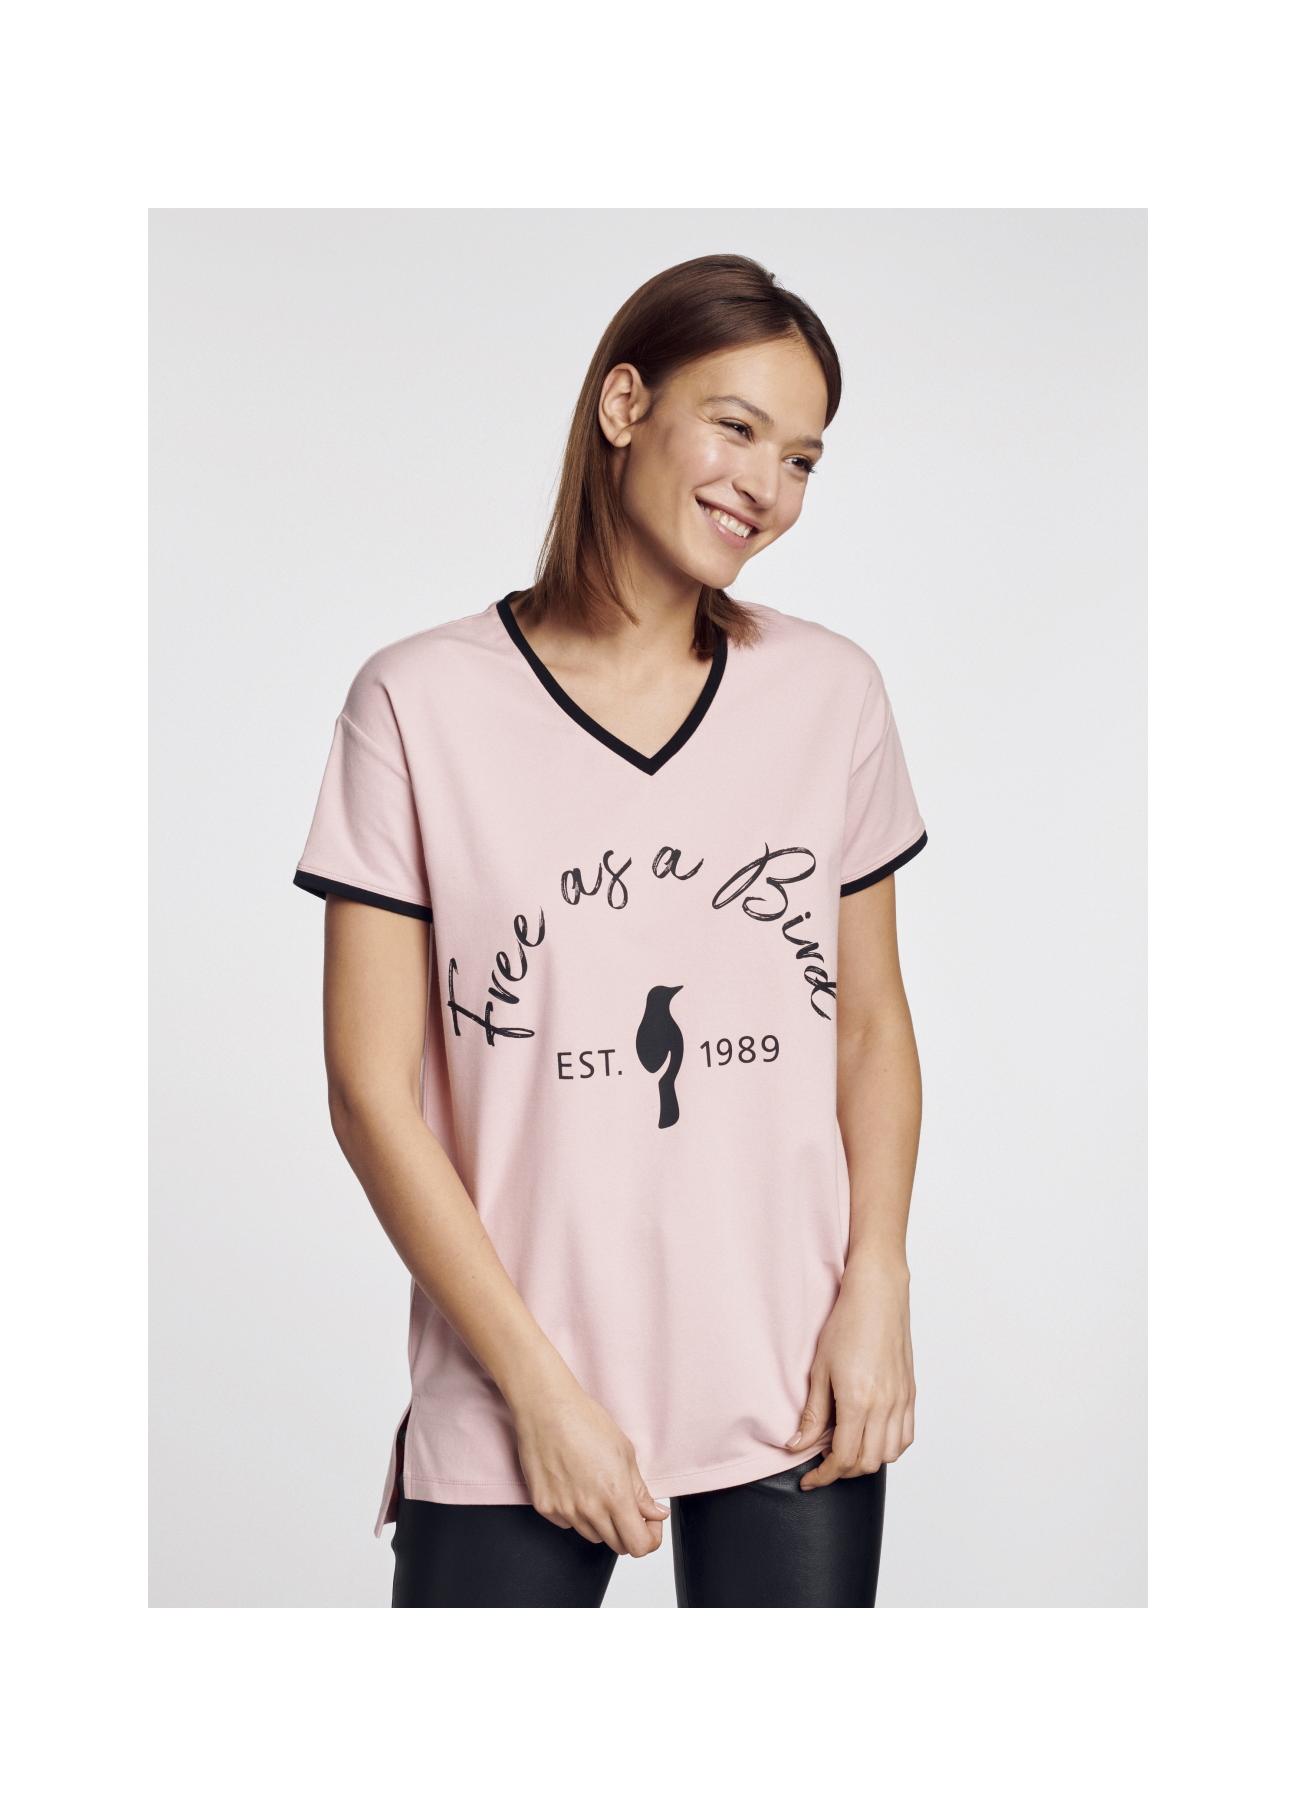 Różowy T-shirt z dekoltem V damski TSHDT-0065-31(W21)